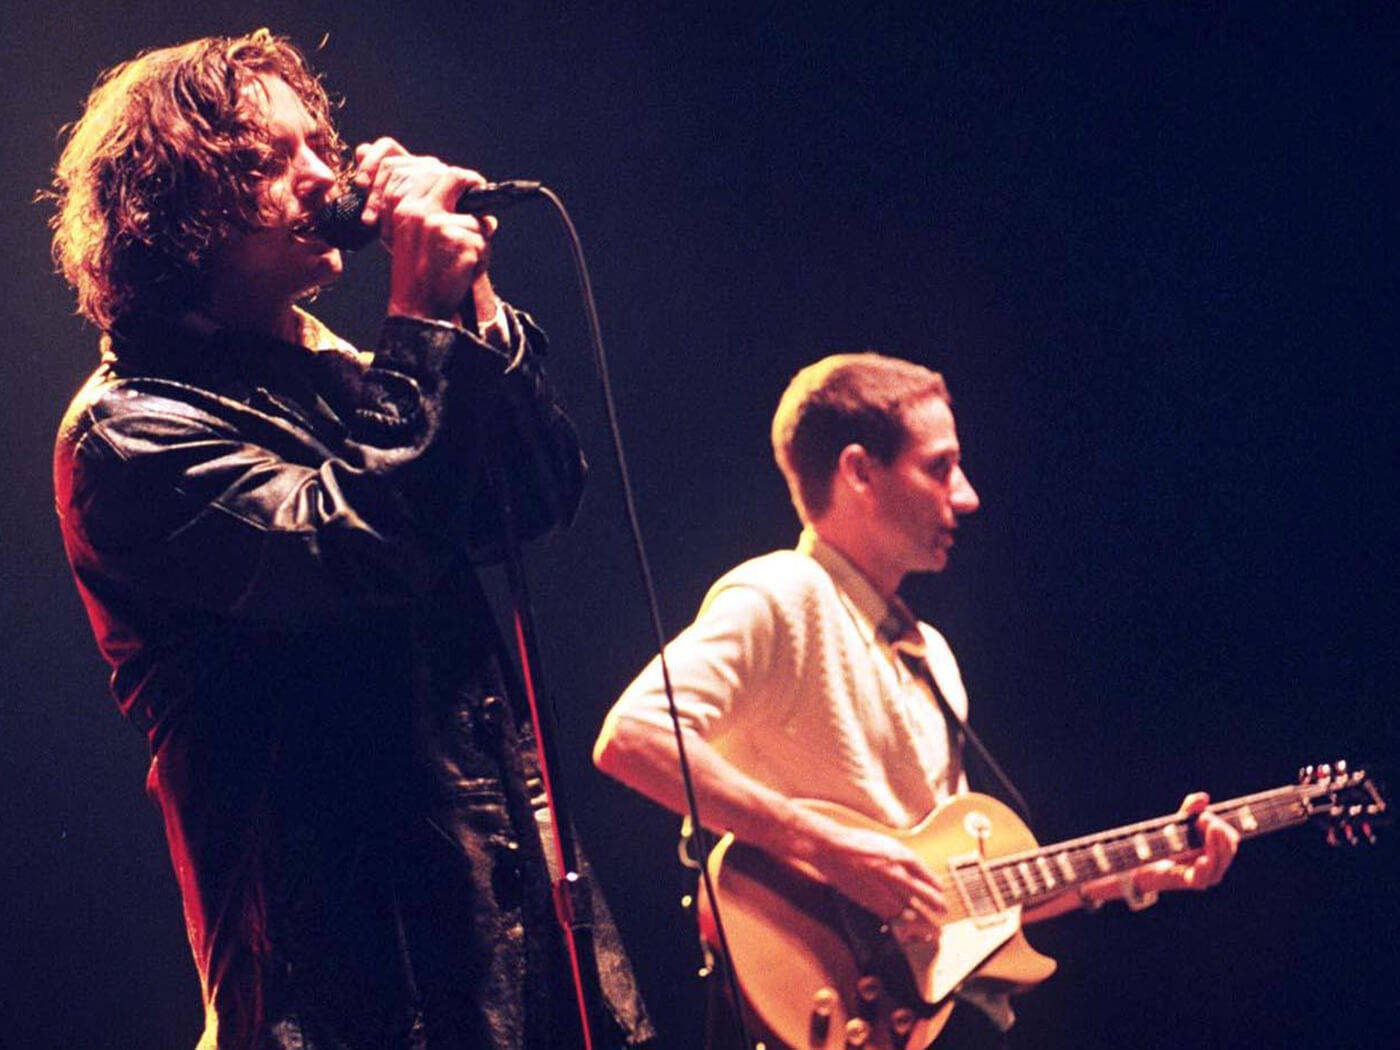 Pearl Jam Rock Band's Frontman Eddie Vedder Engrossed In Performance Wallpaper